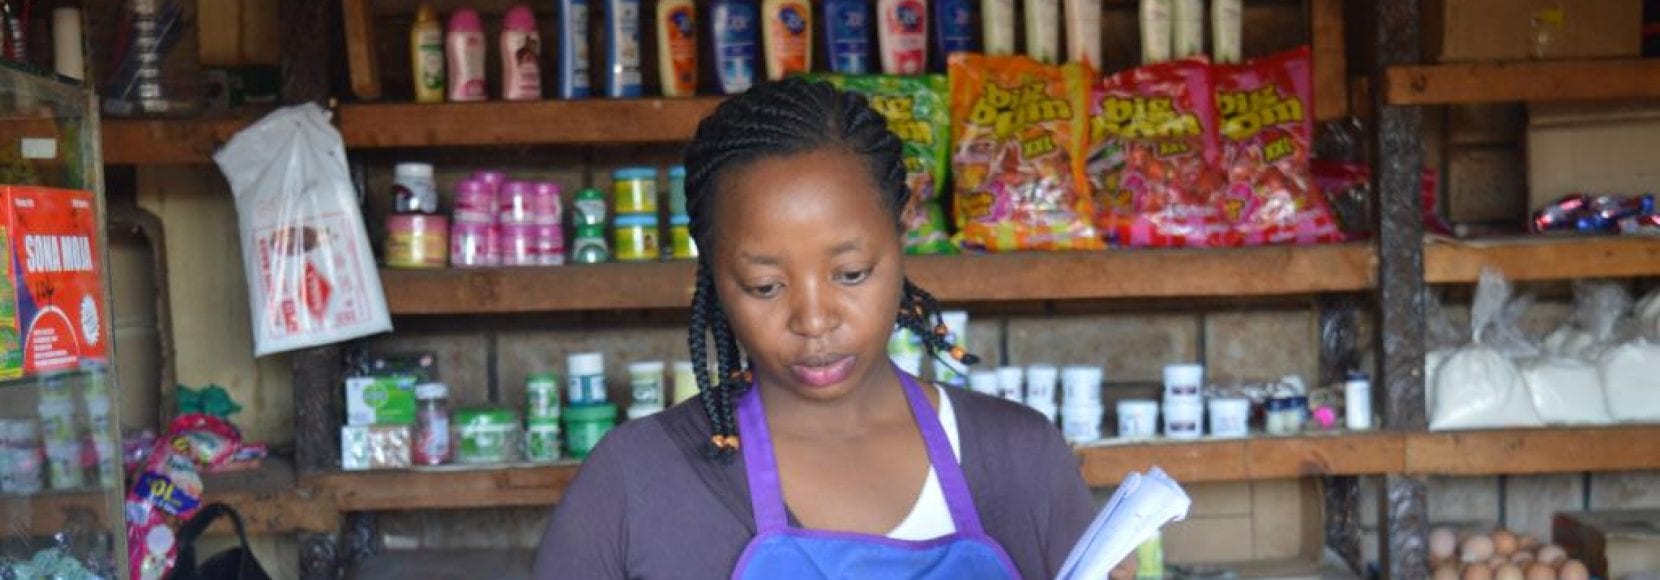 A shopkeeper in Kenya